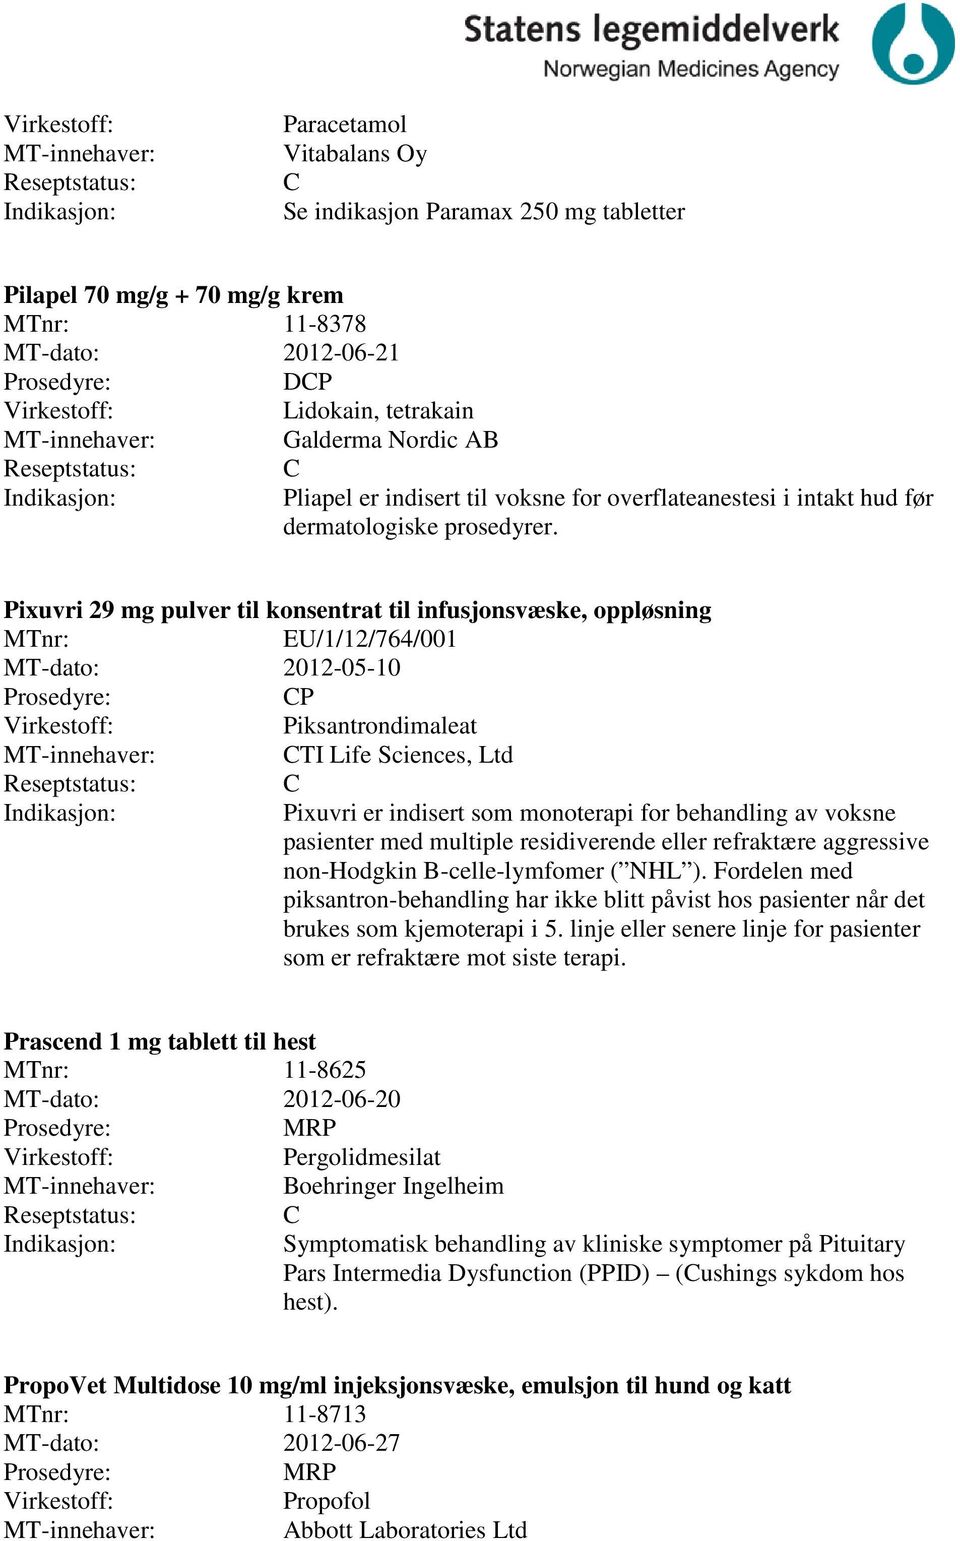 Pixuvri 29 mg pulver til konsentrat til infusjonsvæske, oppløsning MTnr: EU/1/12/764/001 MT-dato: 2012-05-10 P Piksantrondimaleat TI Life Sciences, Ltd Pixuvri er indisert som monoterapi for